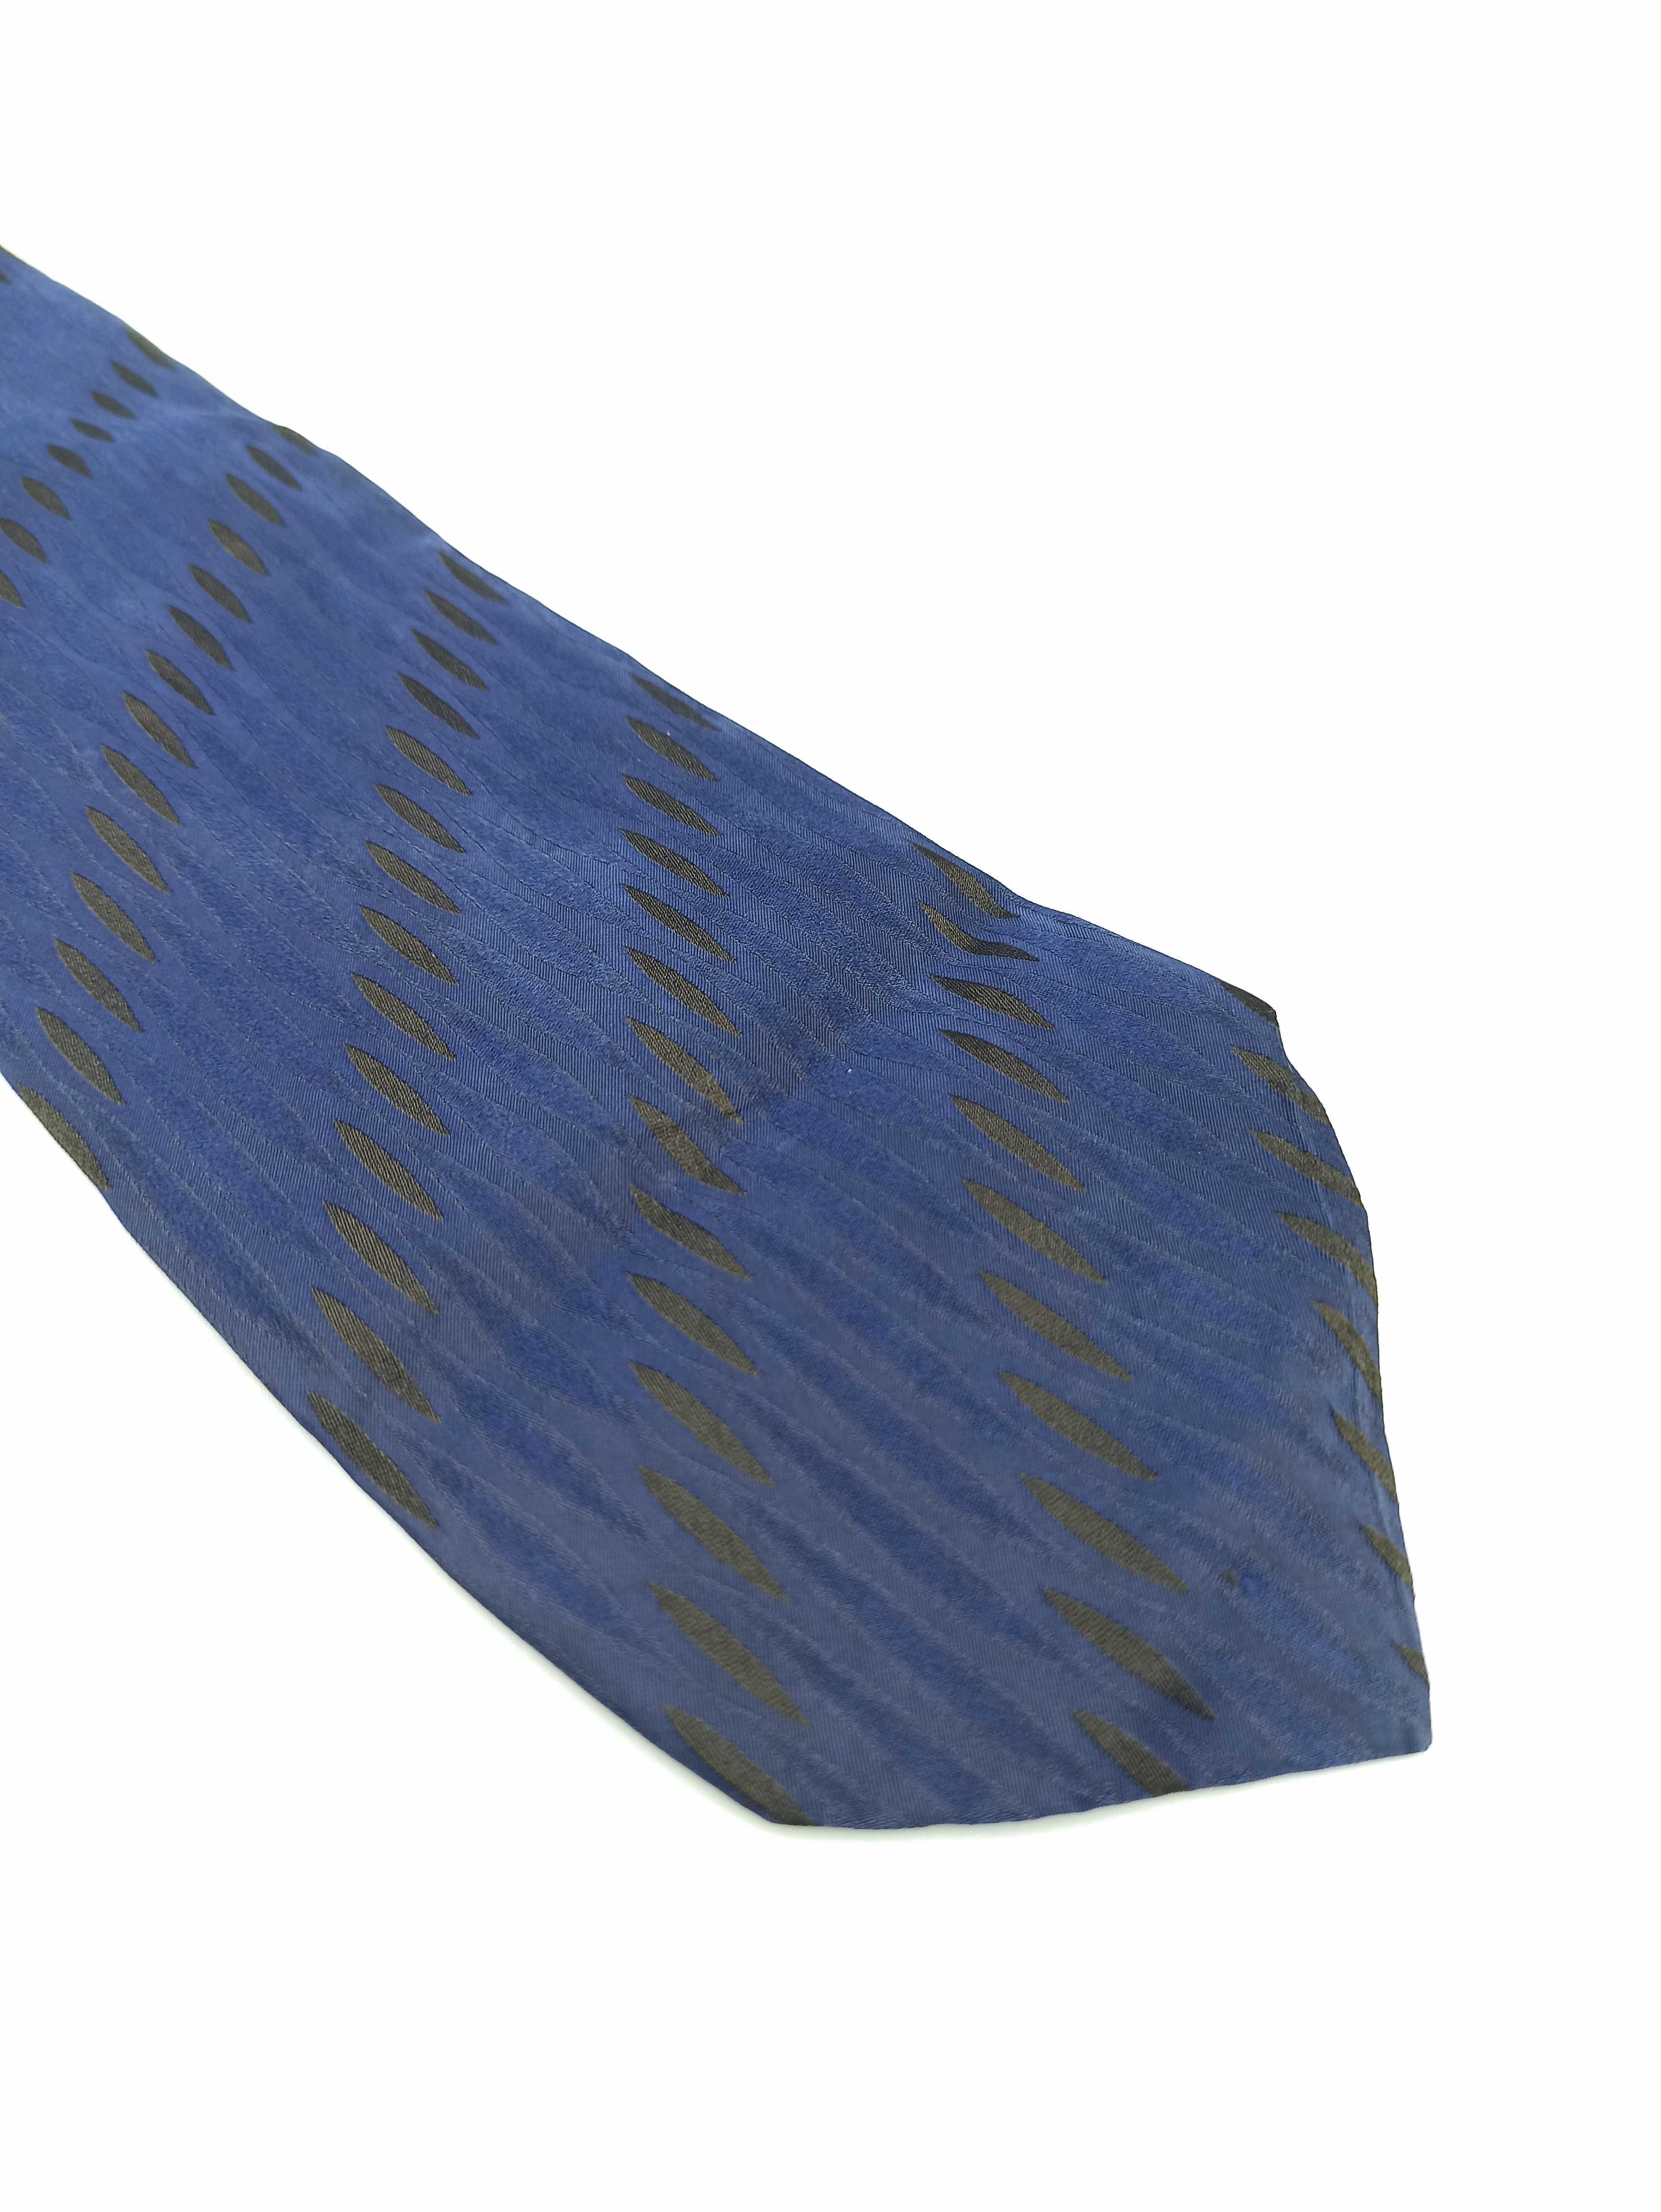 Hugo Boss granatowy niebieski jedwabny krawat ulu56